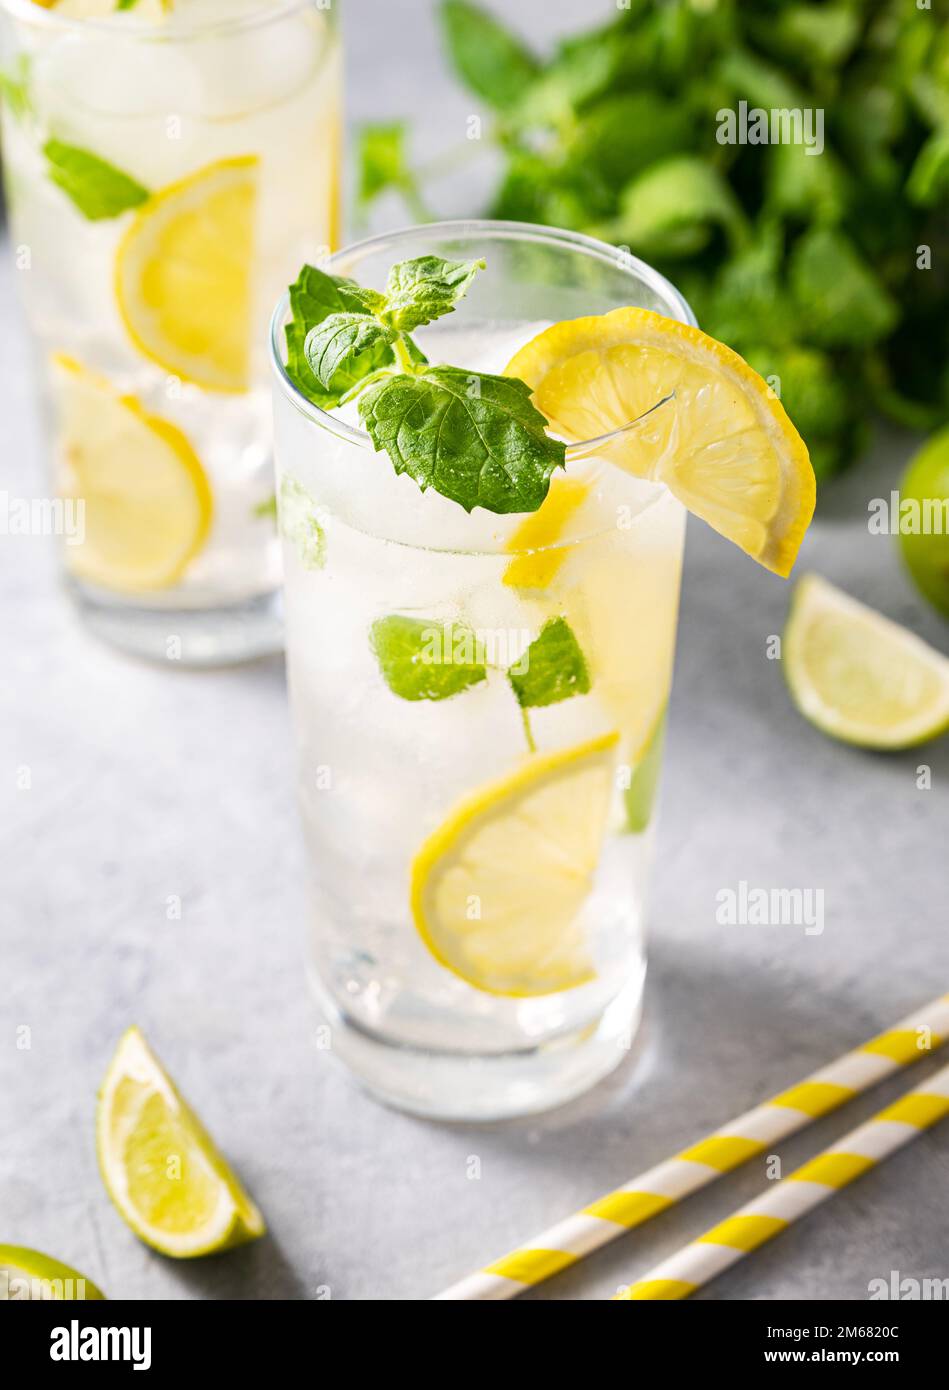 Mojito buvez avec des citrons frais. Cocktail rafraîchissant au citron vert, citron, menthe et glace dans un grand verre sur fond gris. Concept de boissons froides d'été. Banque D'Images